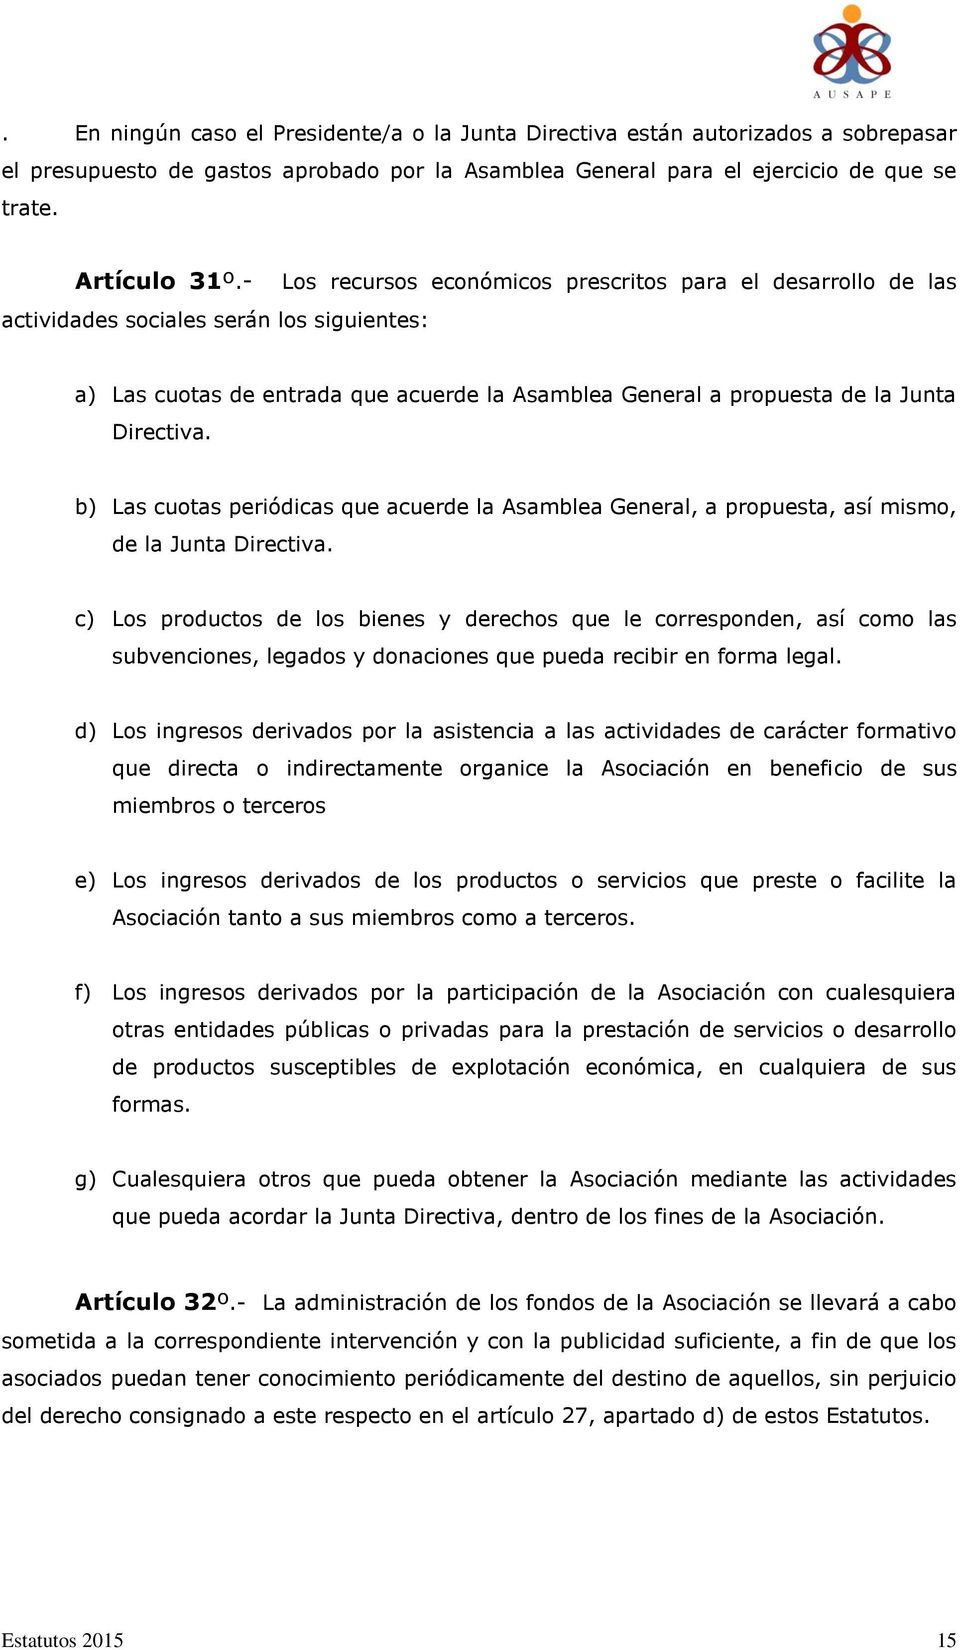 b) Las cuotas periódicas que acuerde la Asamblea General, a propuesta, así mismo, de la Junta Directiva.